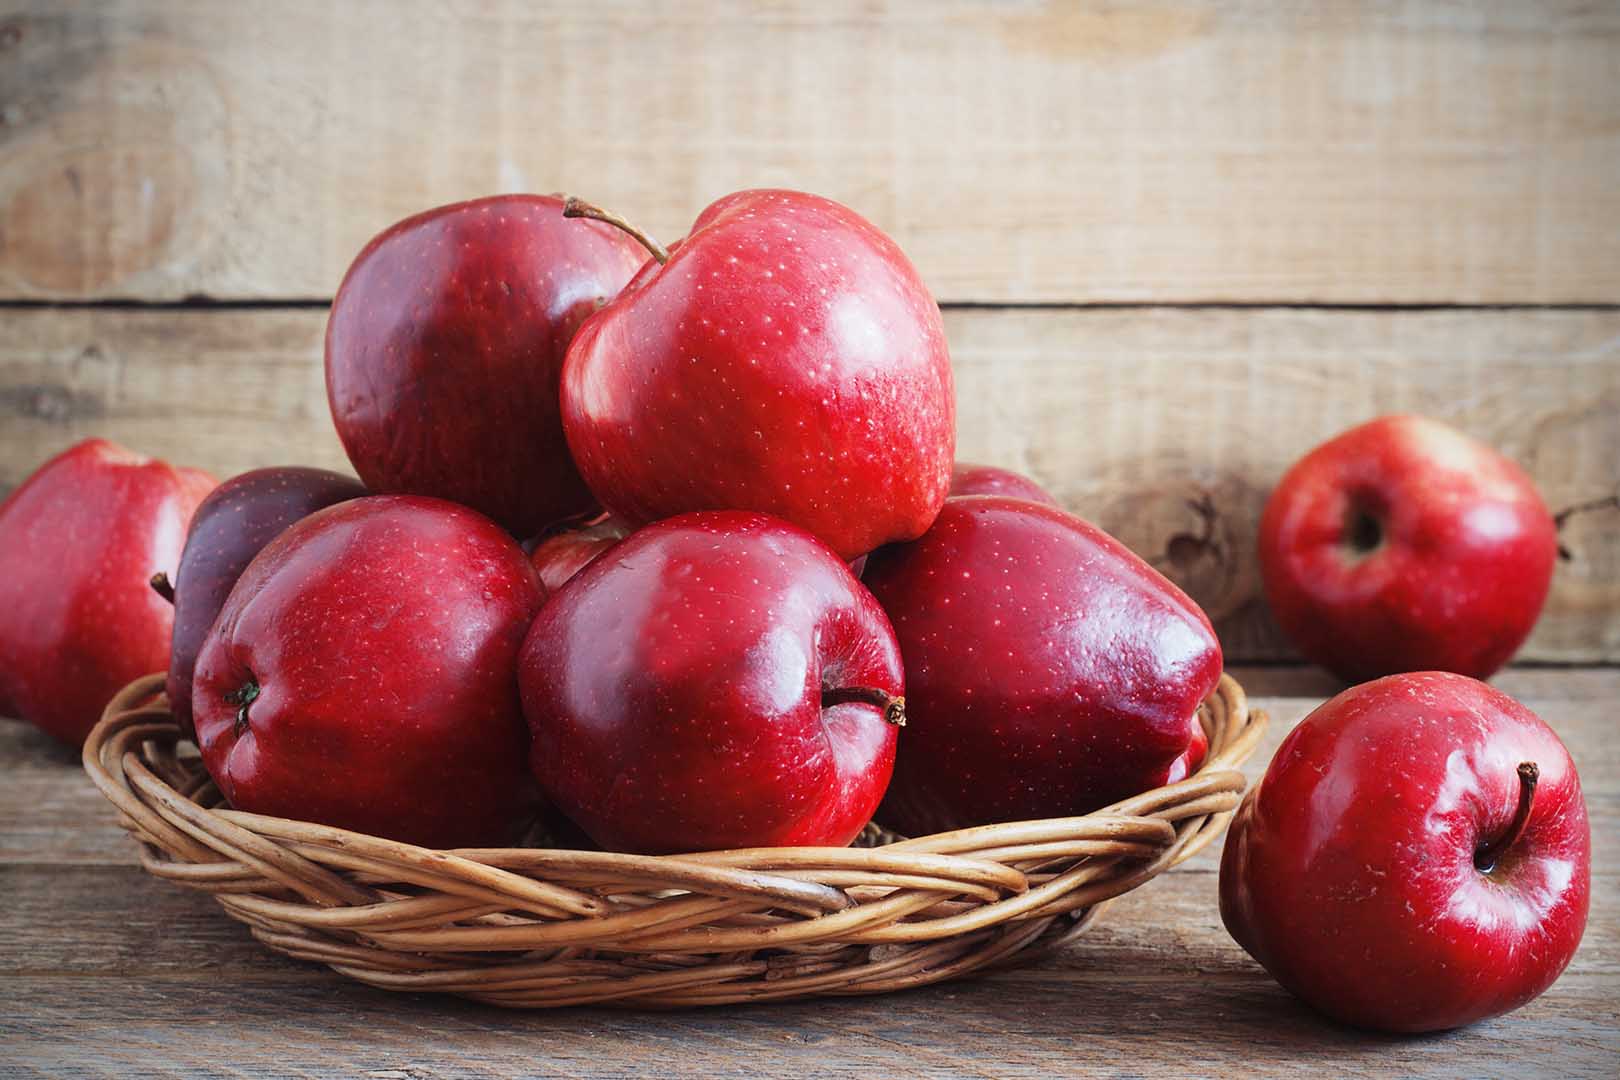 buah-apel-manfaat-kesehatan-mengkonsumsi